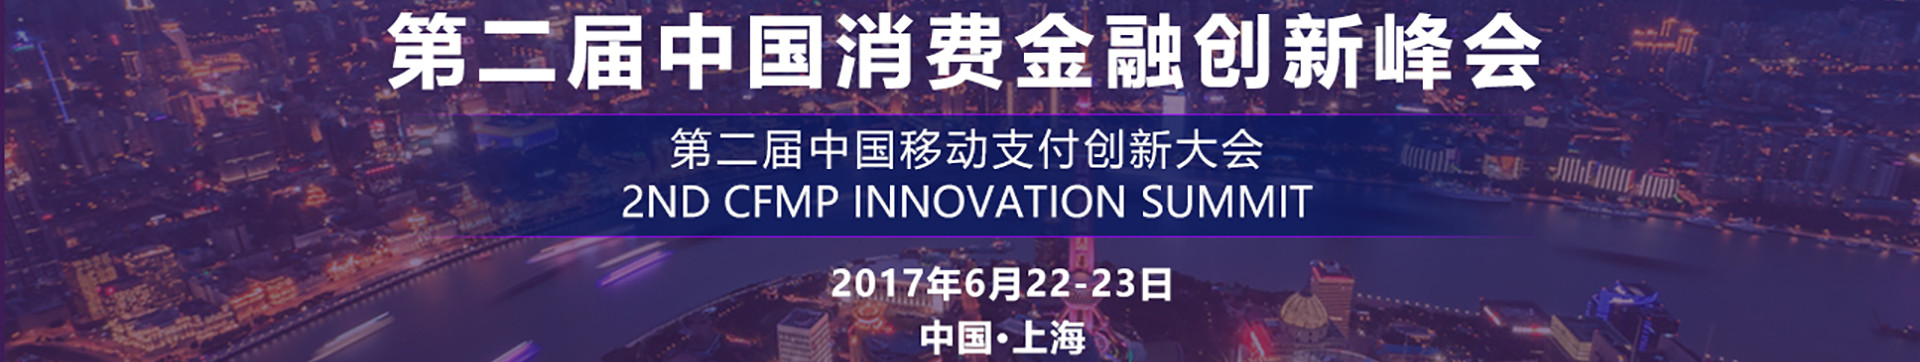 第二届中国消费金融创新峰会